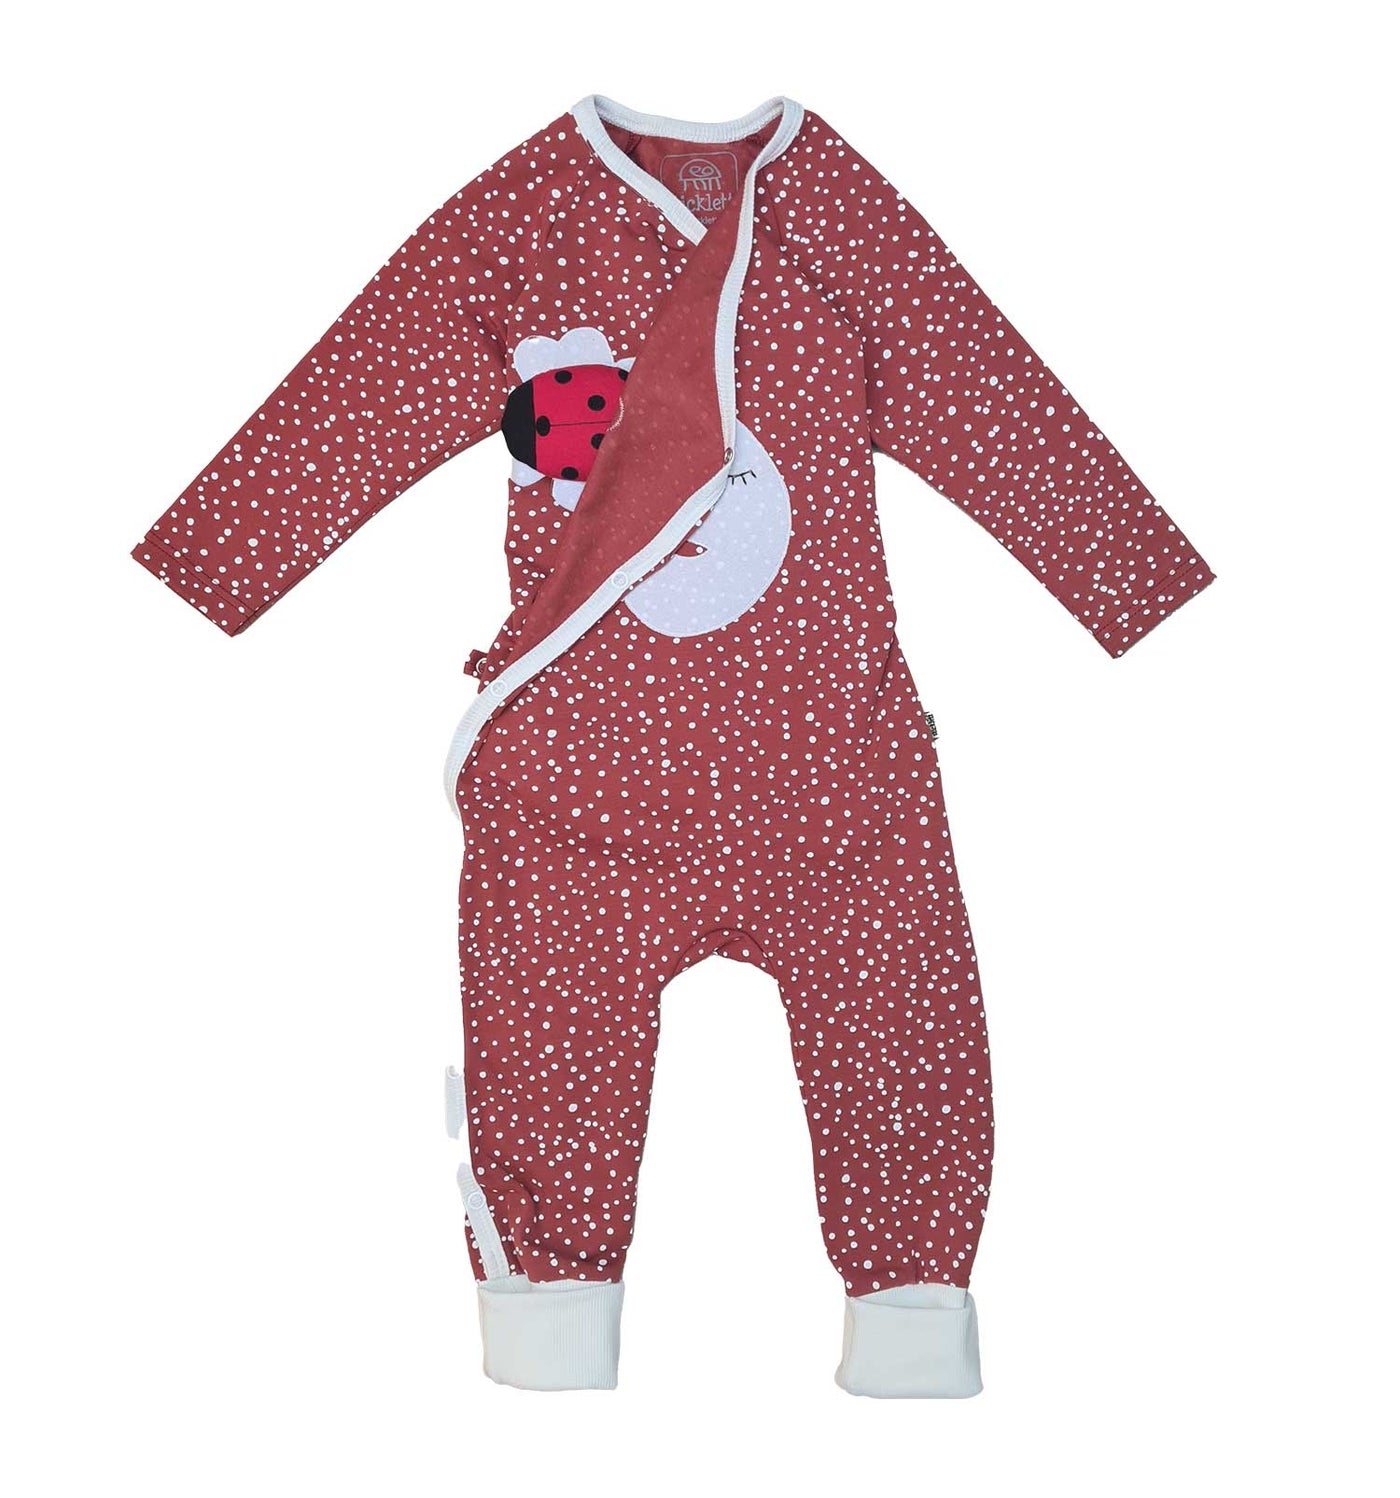 Baby Wickelstrampler Schlafanzug aus Biobaumwolle in rostrot